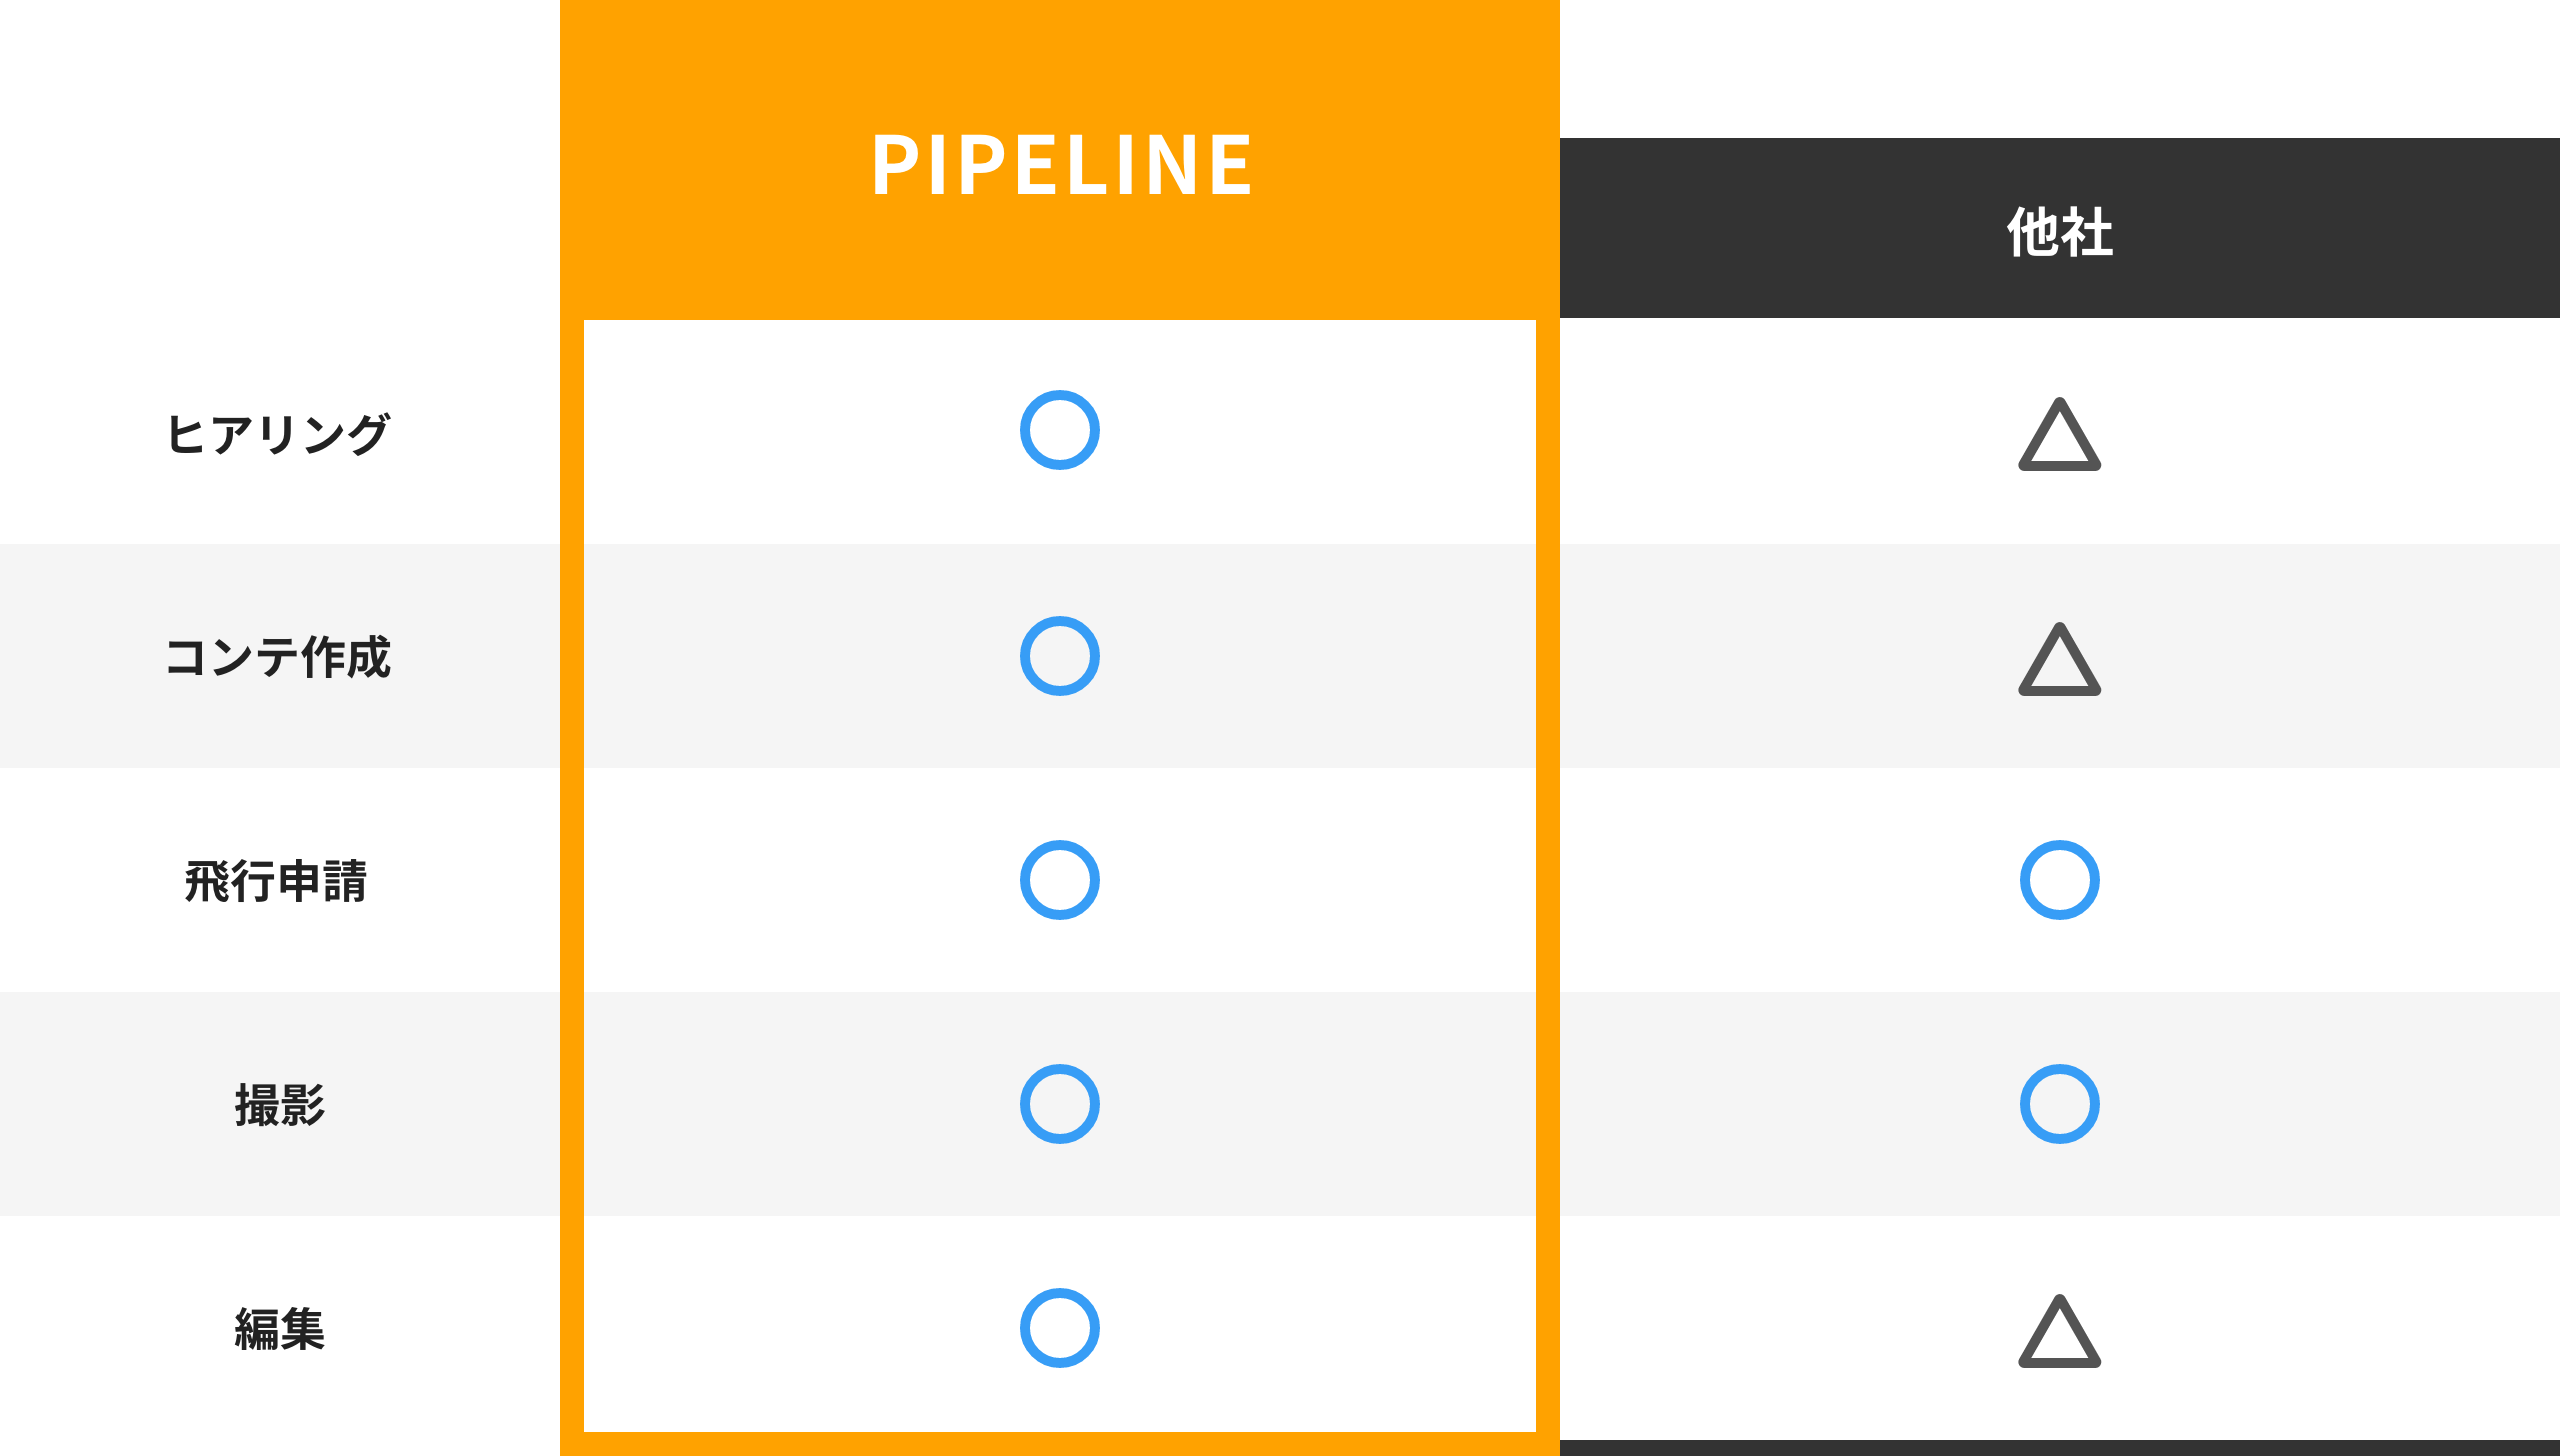 サービス比較表:pipelineと他社について:							pipelineの場合:ヒアリング・コンテ作成・飛行申請・撮影・編集、すべてのサービスにおいて対応可能（丸の印）							他社の場合:飛行申請・撮影のみ対応可能（丸の印）その他ヒアリング・コンテ作成・編集においては三角の印